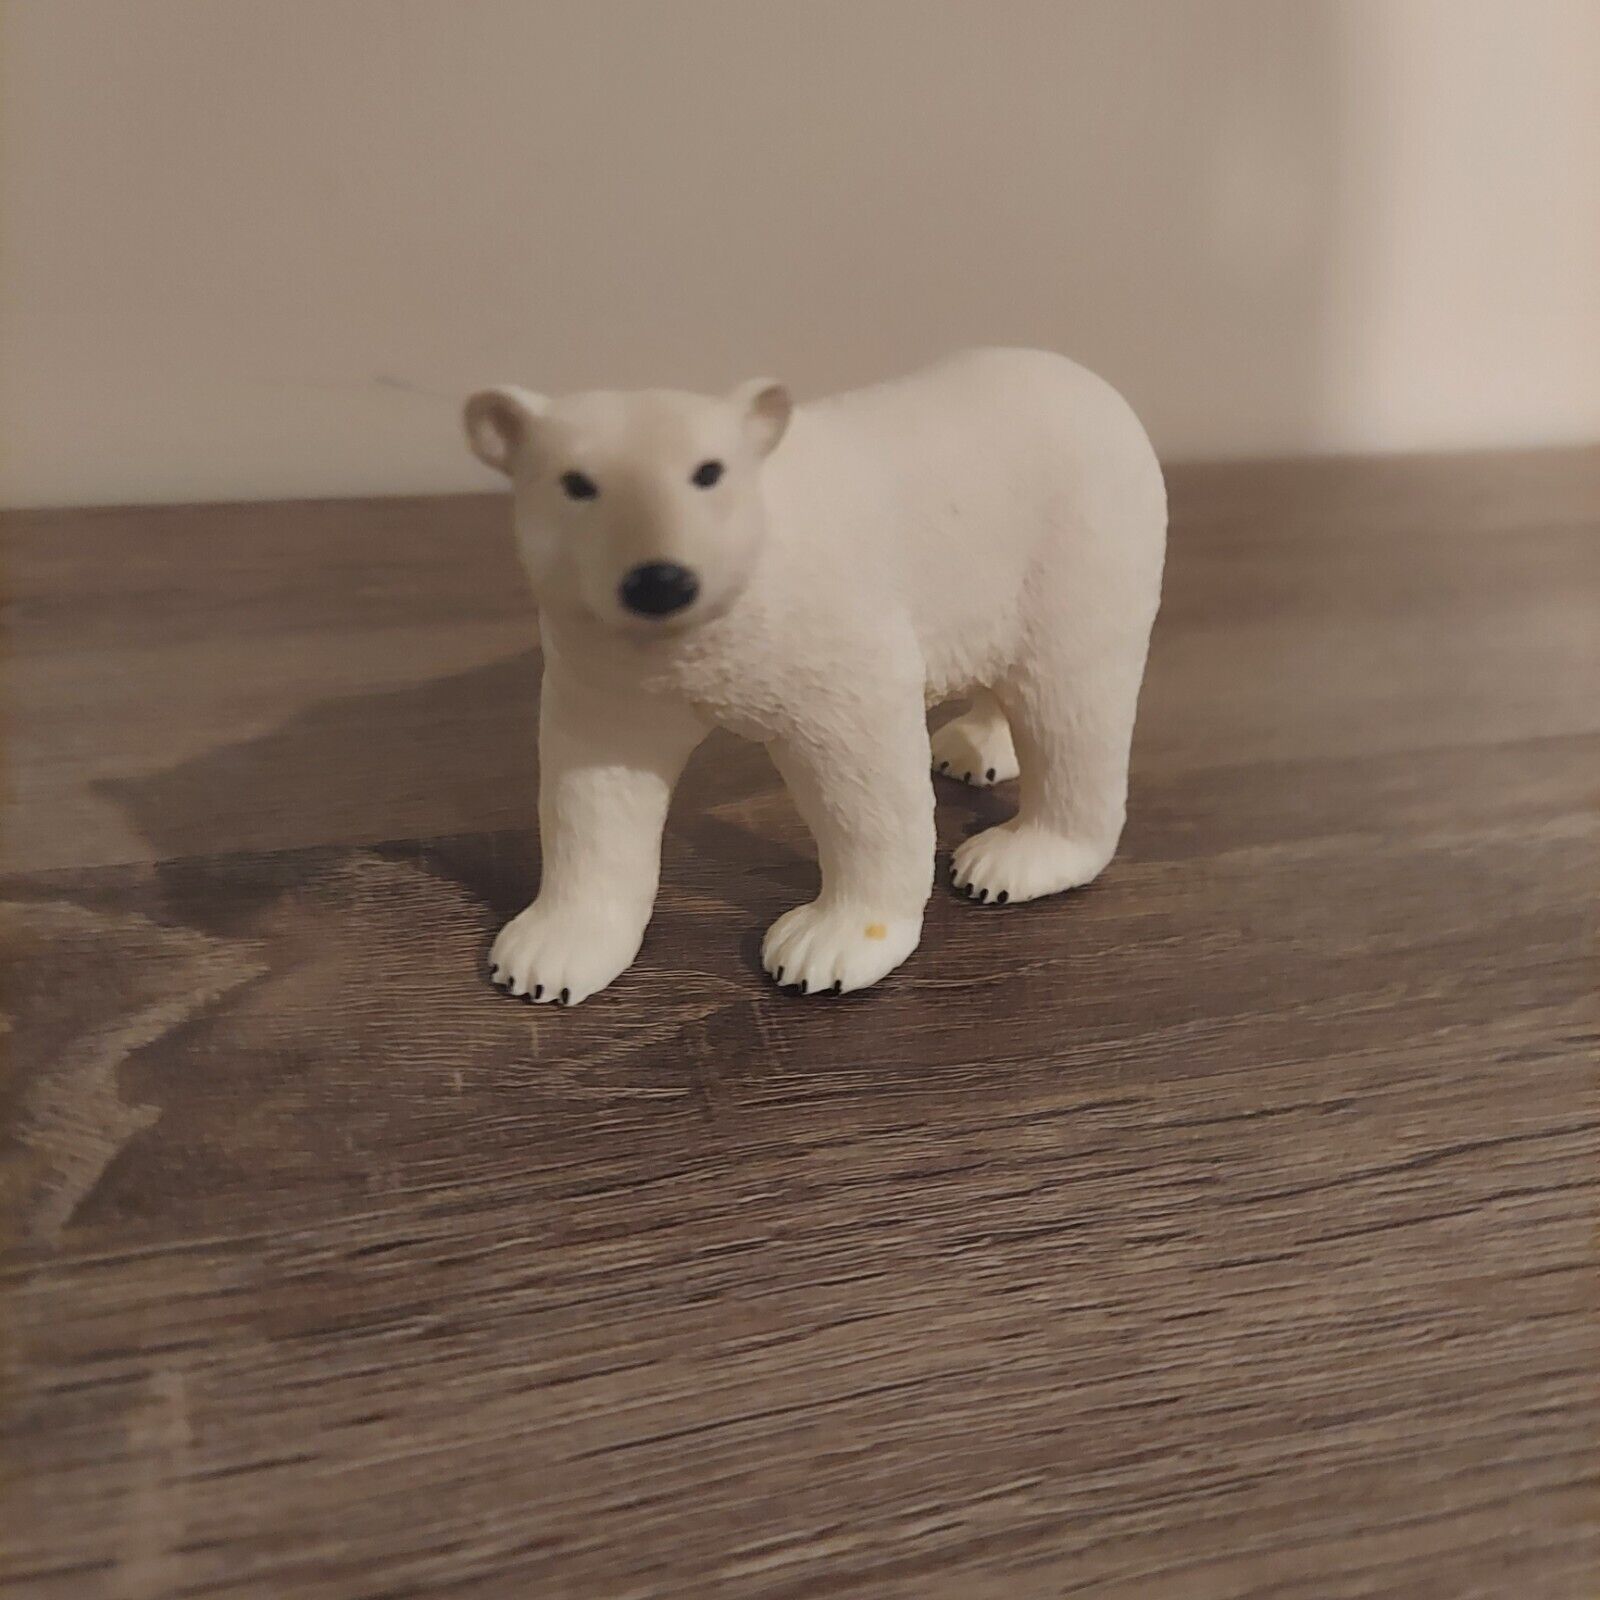 Schleich Polar Bear Figure Figurine Toy - no tag